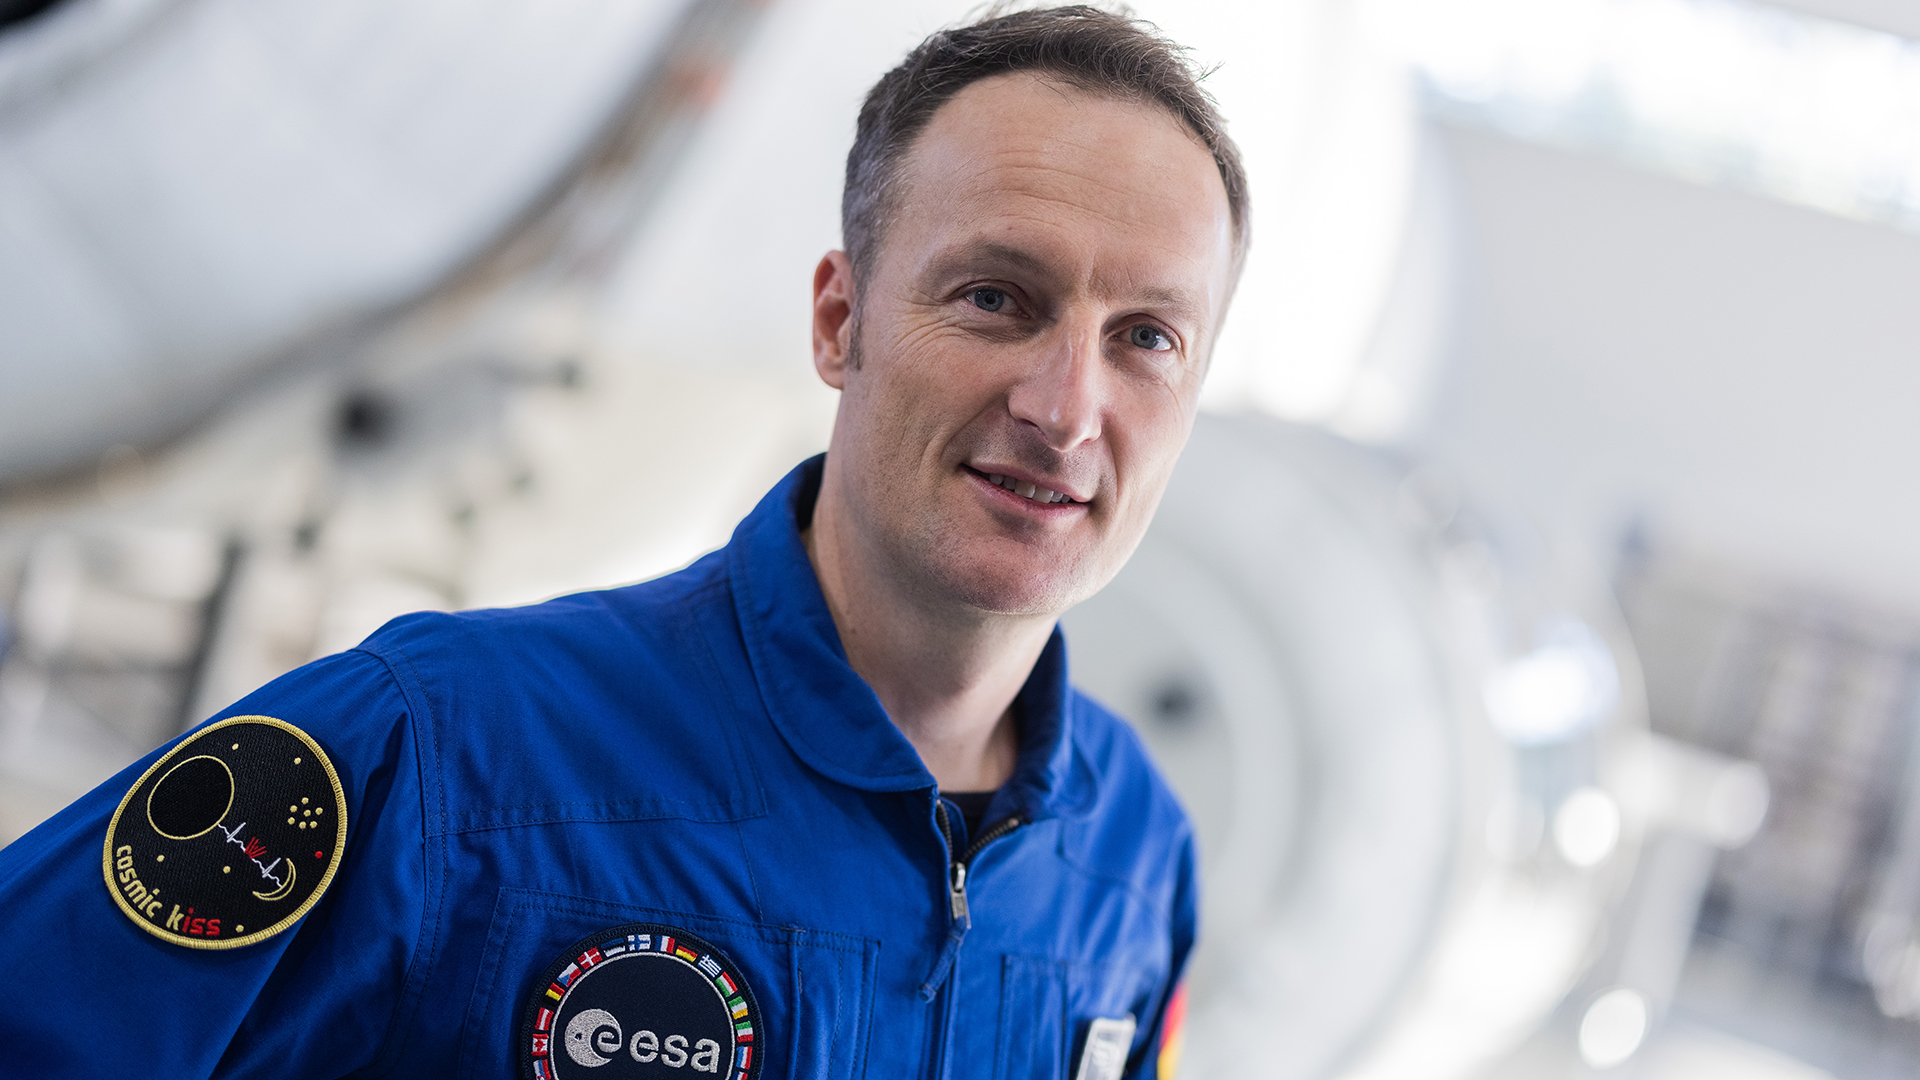 Der deutsche Astronaut Matthias Maurer | dpa